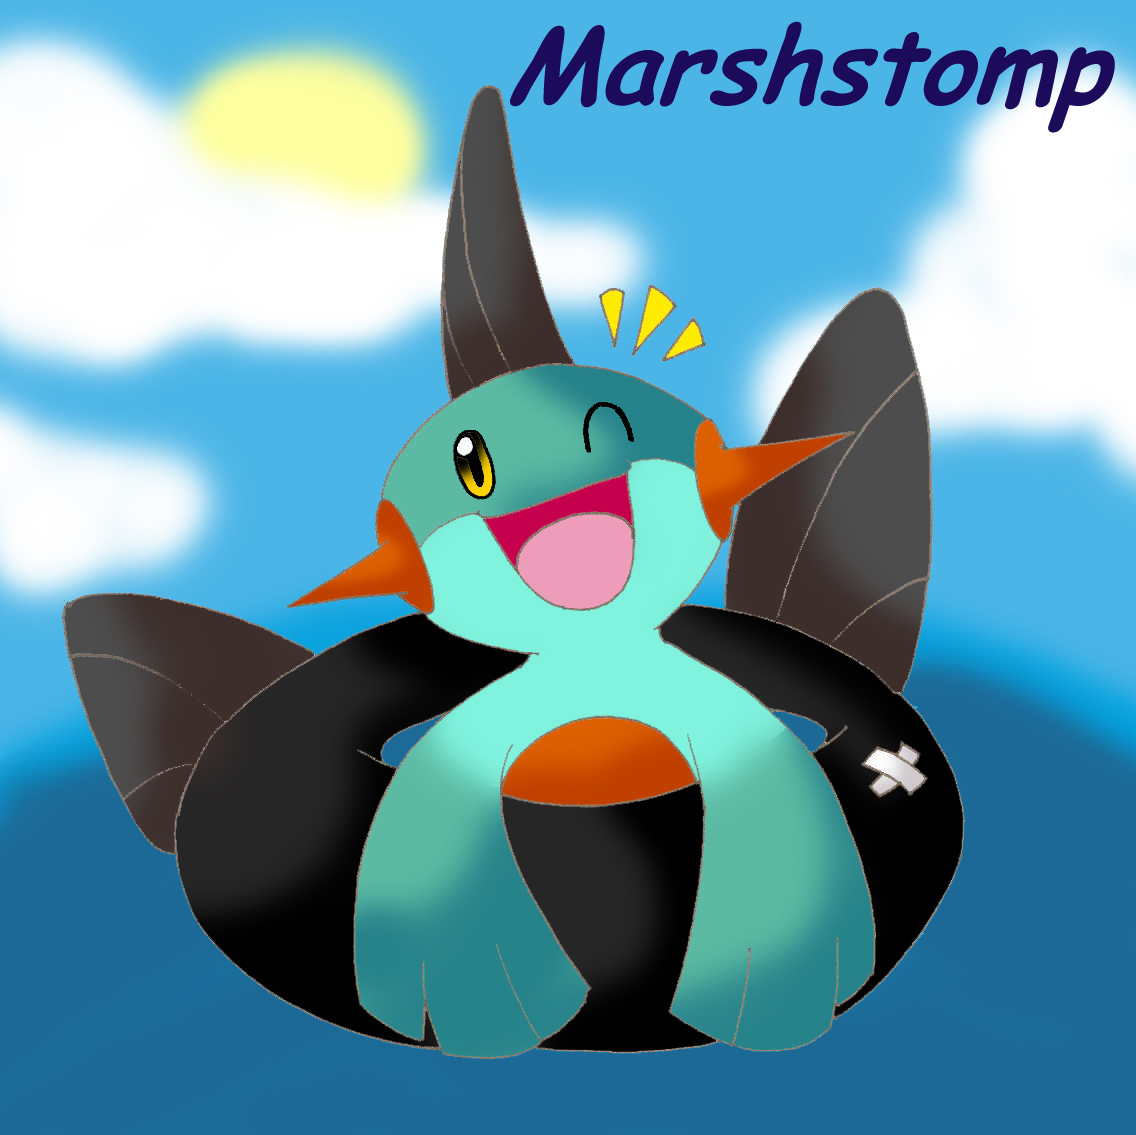 Marshstomp for G-manluver